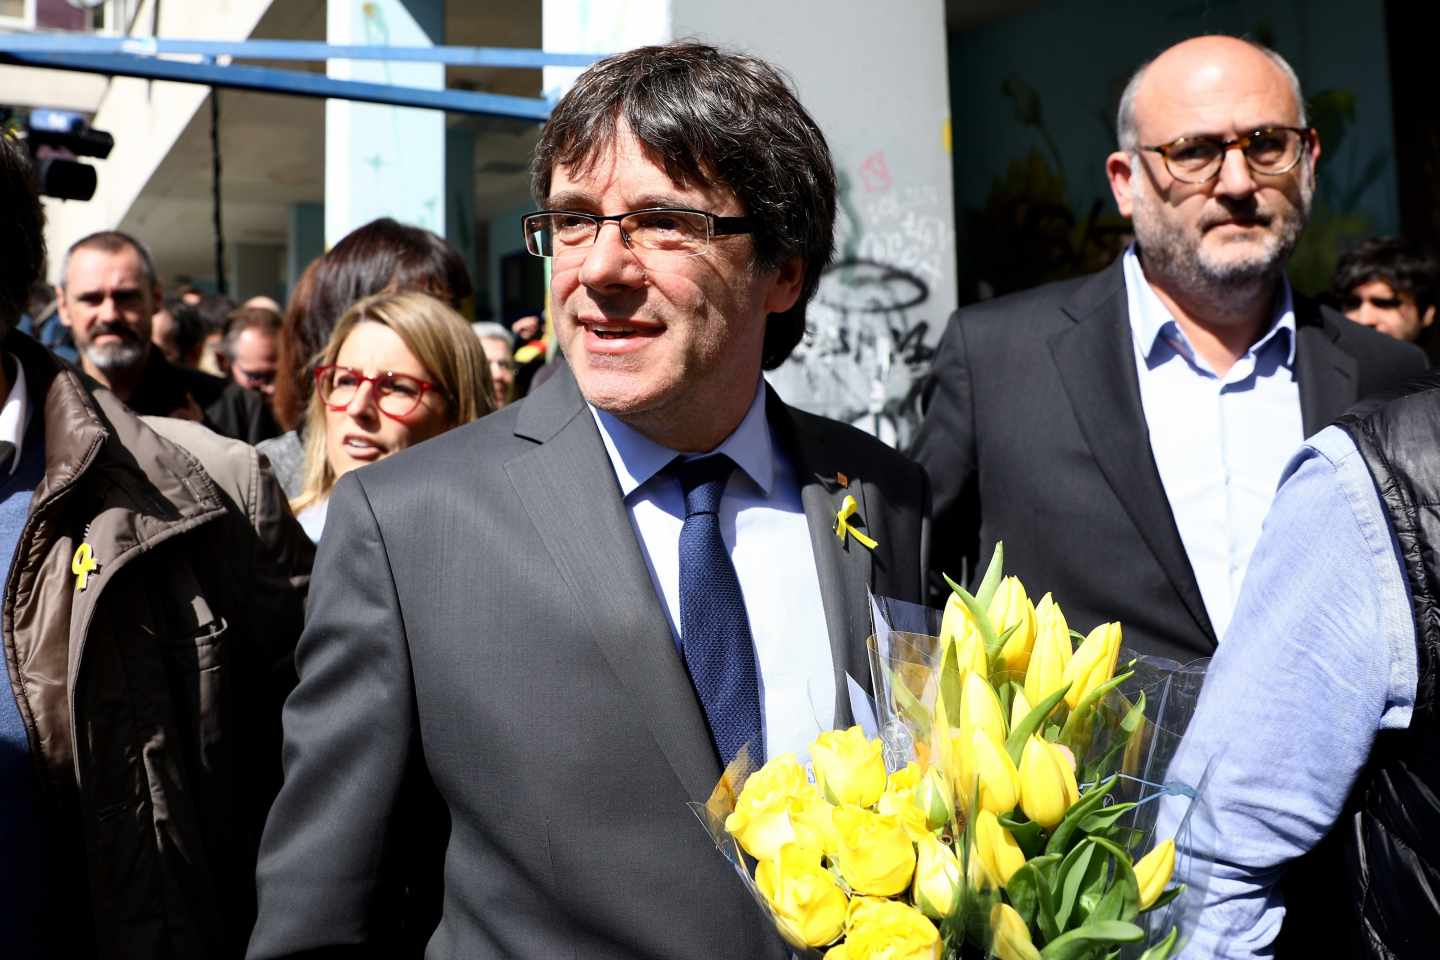 Silencio oficial sobre el encuentro de Puigdemont con la etarra Jáuregui